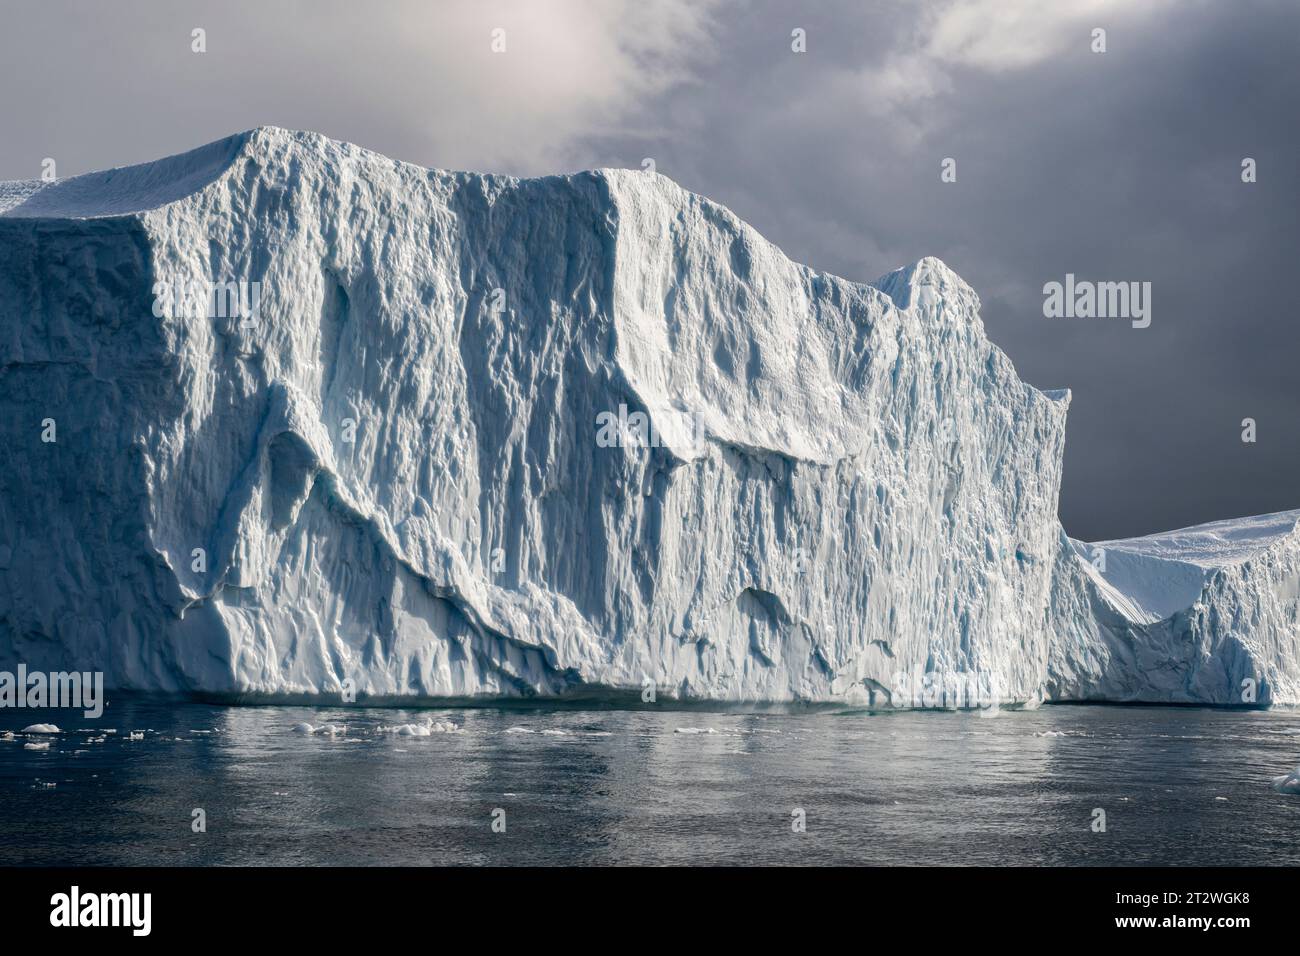 Groenland, Ilulissat. Disko Bay, célèbre pour ses grands icebergs. Banque D'Images